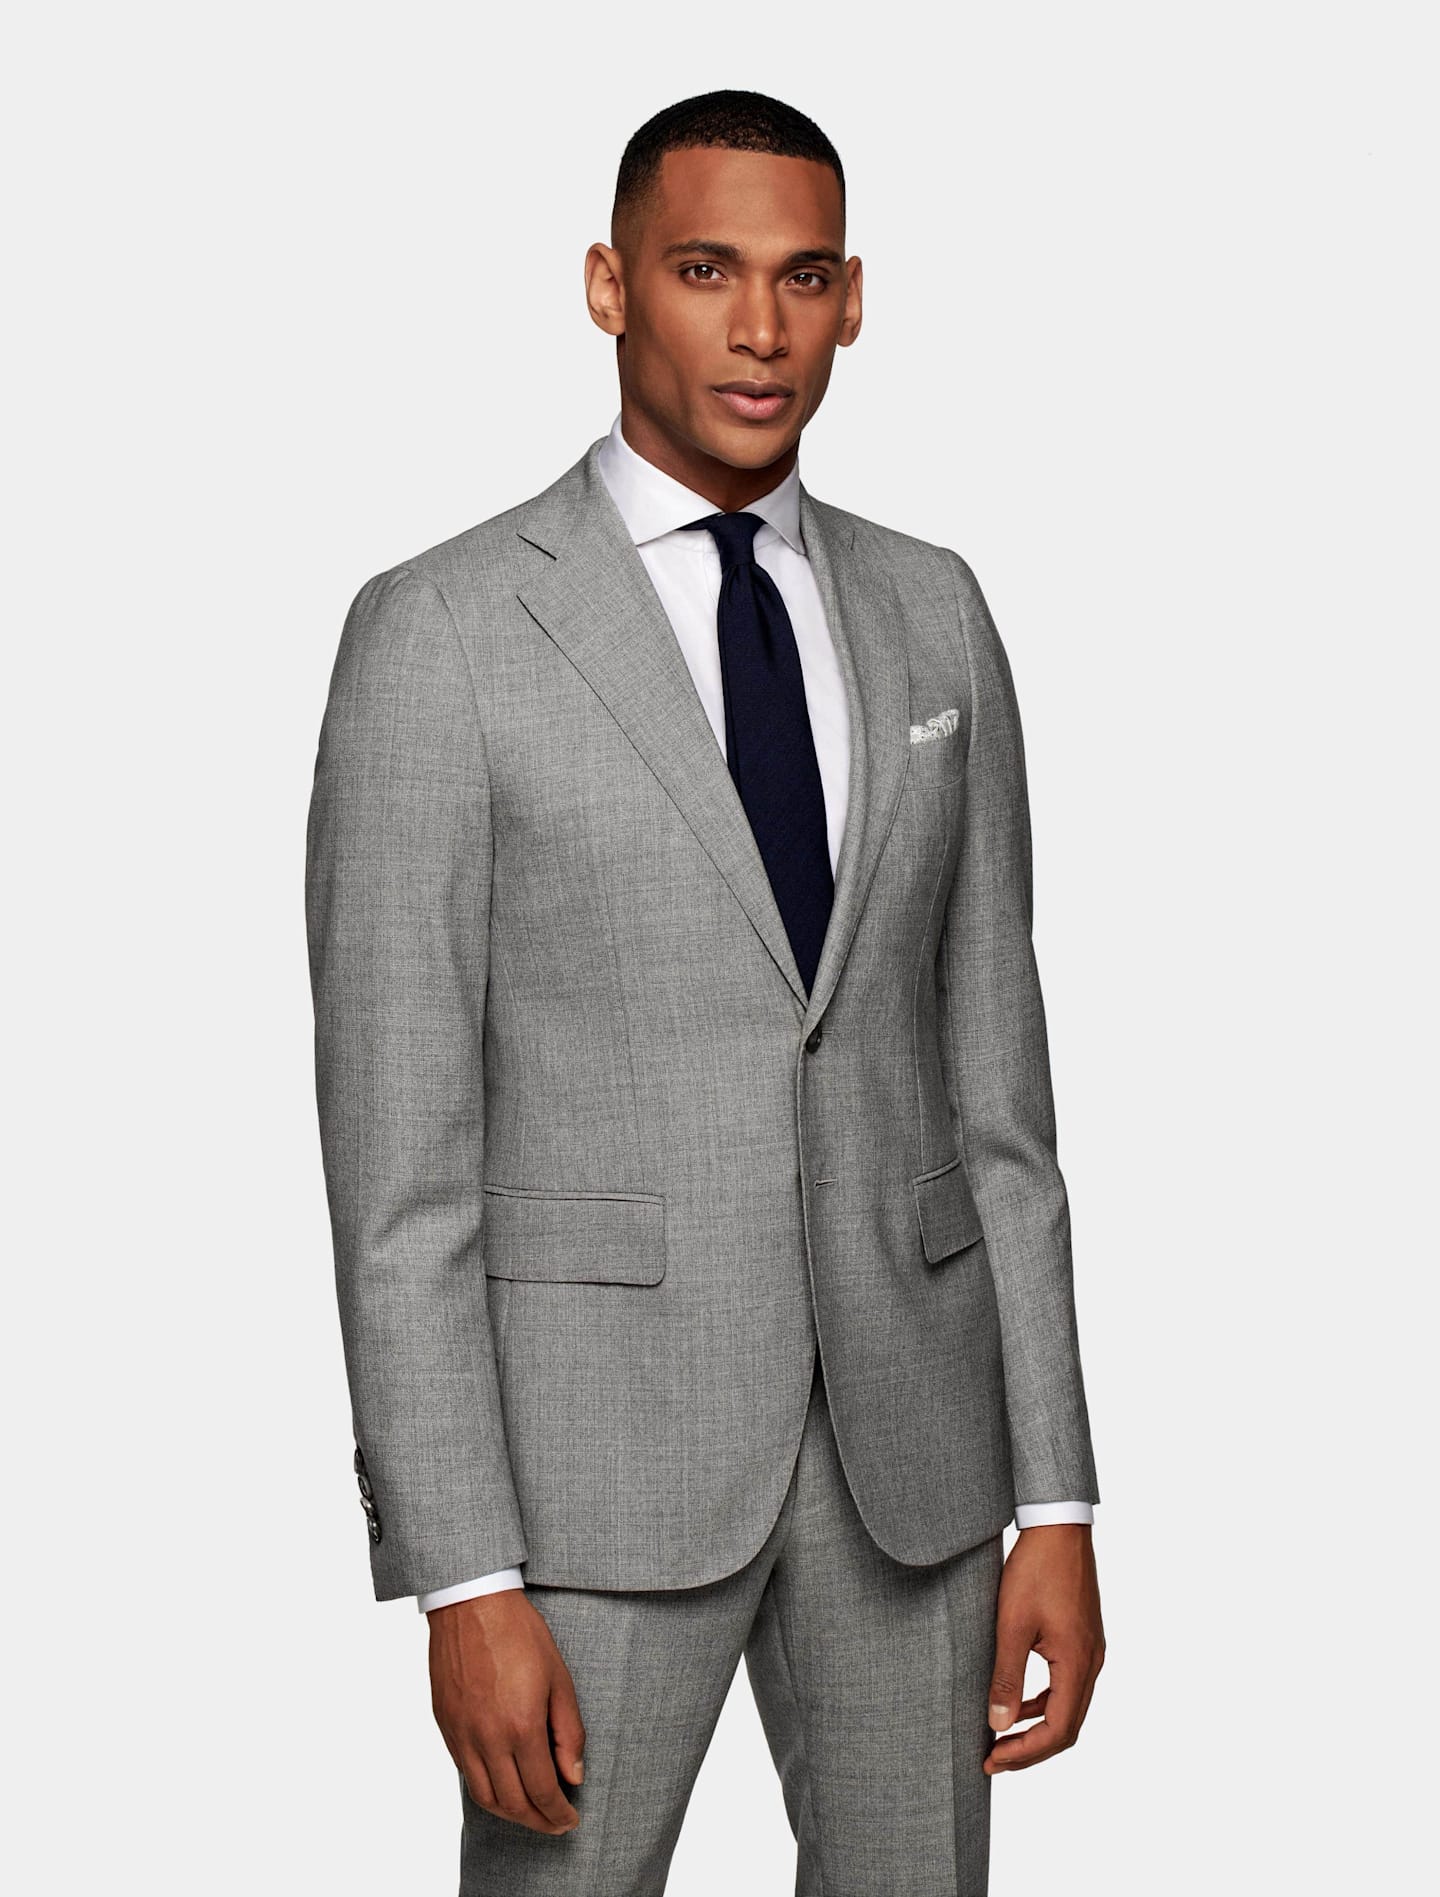 Grey formal attire suit with a black tie